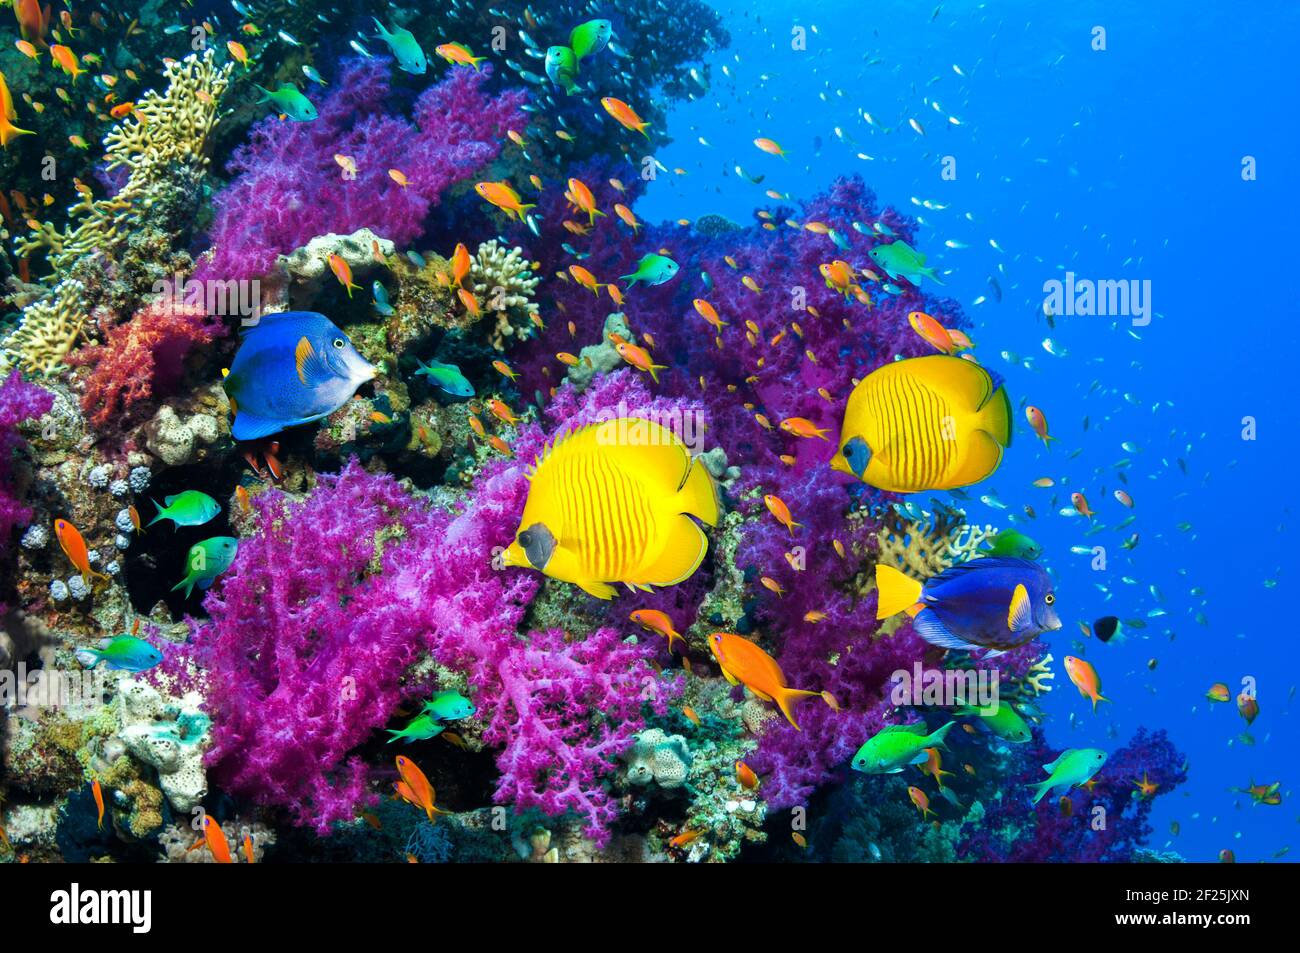 Pez mariposa dorado y rabil rabil o pez surgeongo [Zebrasoma xanthurum] nadando sobre corales blandos. Egipto, Mar Rojo. Foto de stock